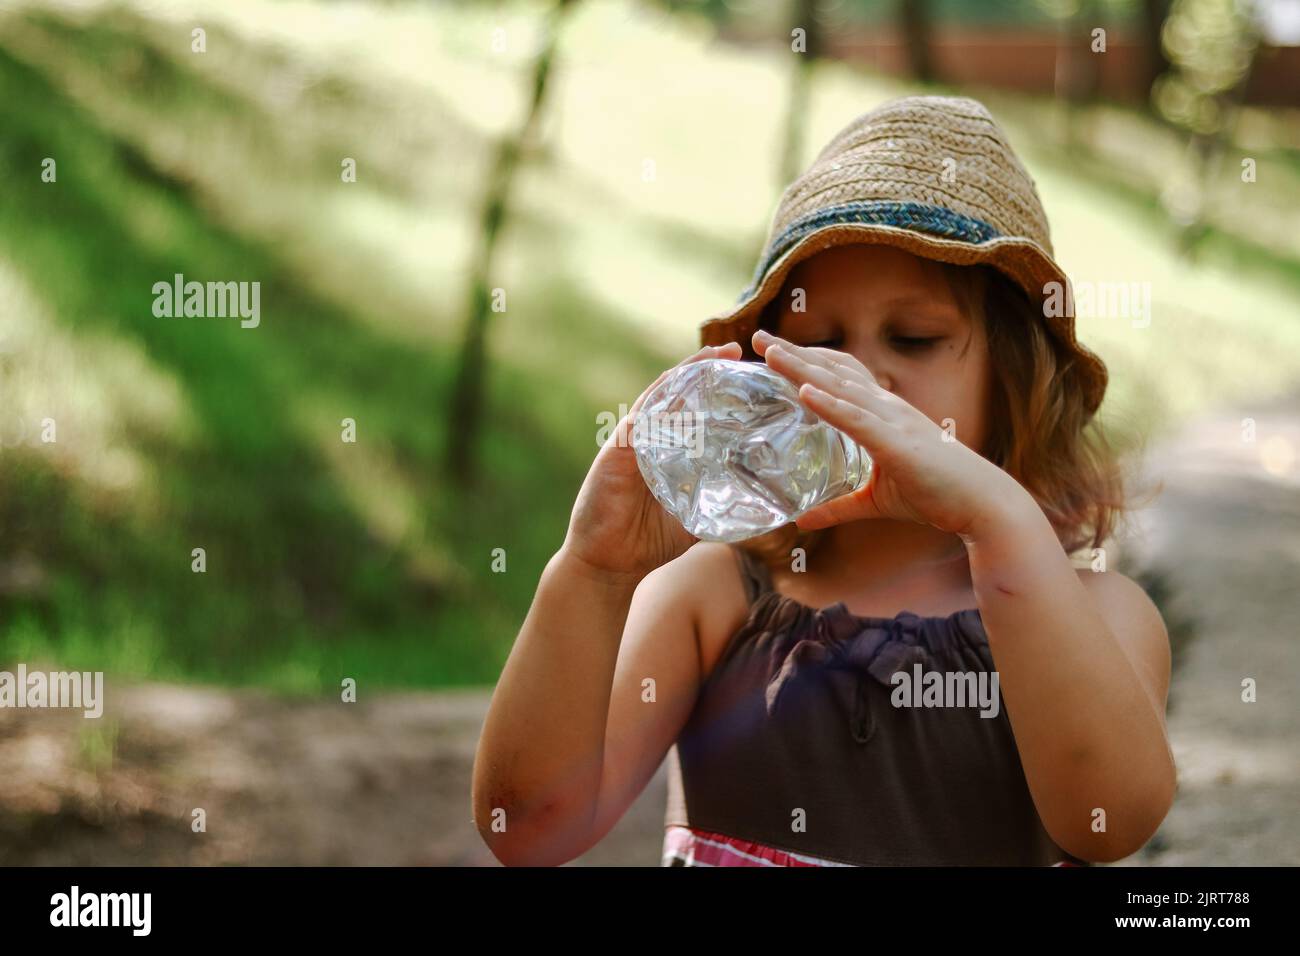 L'enfant boit de l'eau dans une bouteille en plastique. Bébé de 5 ans. Banque D'Images